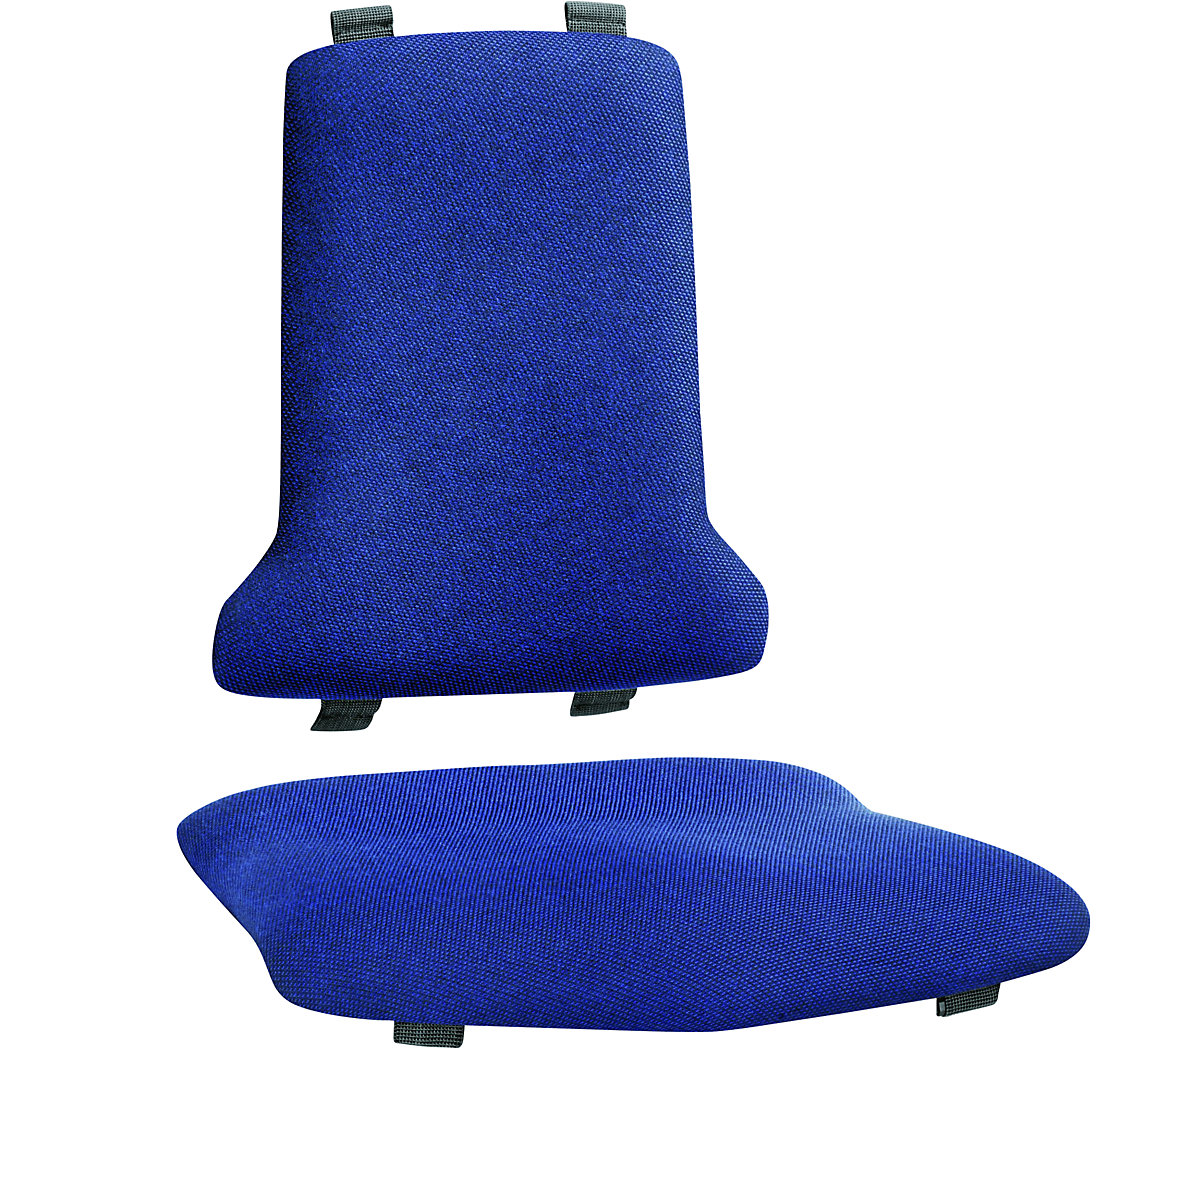 Čalounění – bimos, standardní provedení, vždy 1 čalounění pro sedák a 1 pro opěradlo, textilní čalounění, modrá-3